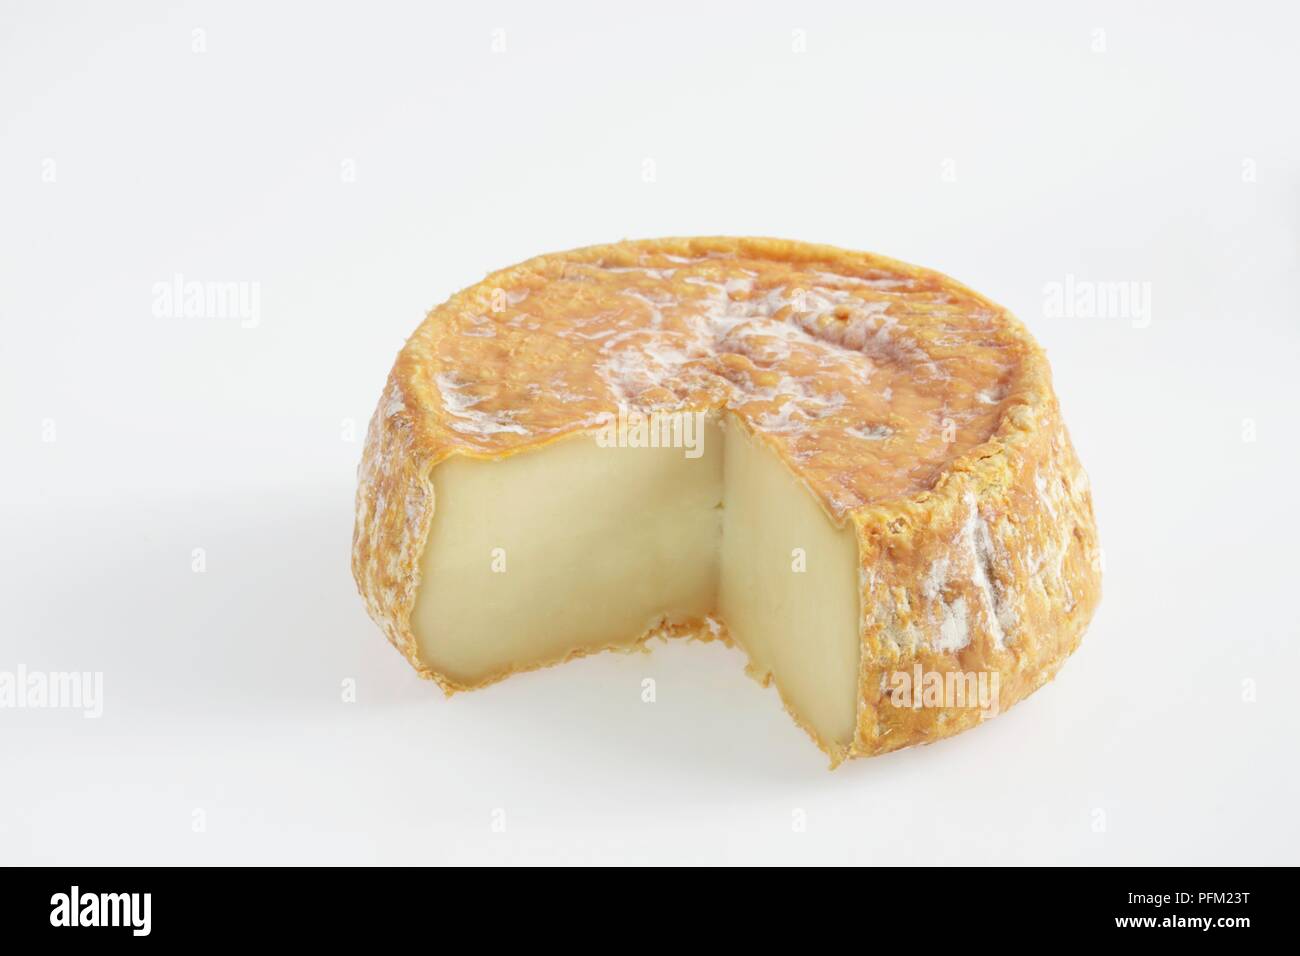 Tour des Anglais U Bel Fiuritu fromage de brebis montrant la moisissure blanche sur le zeste d'orange Banque D'Images